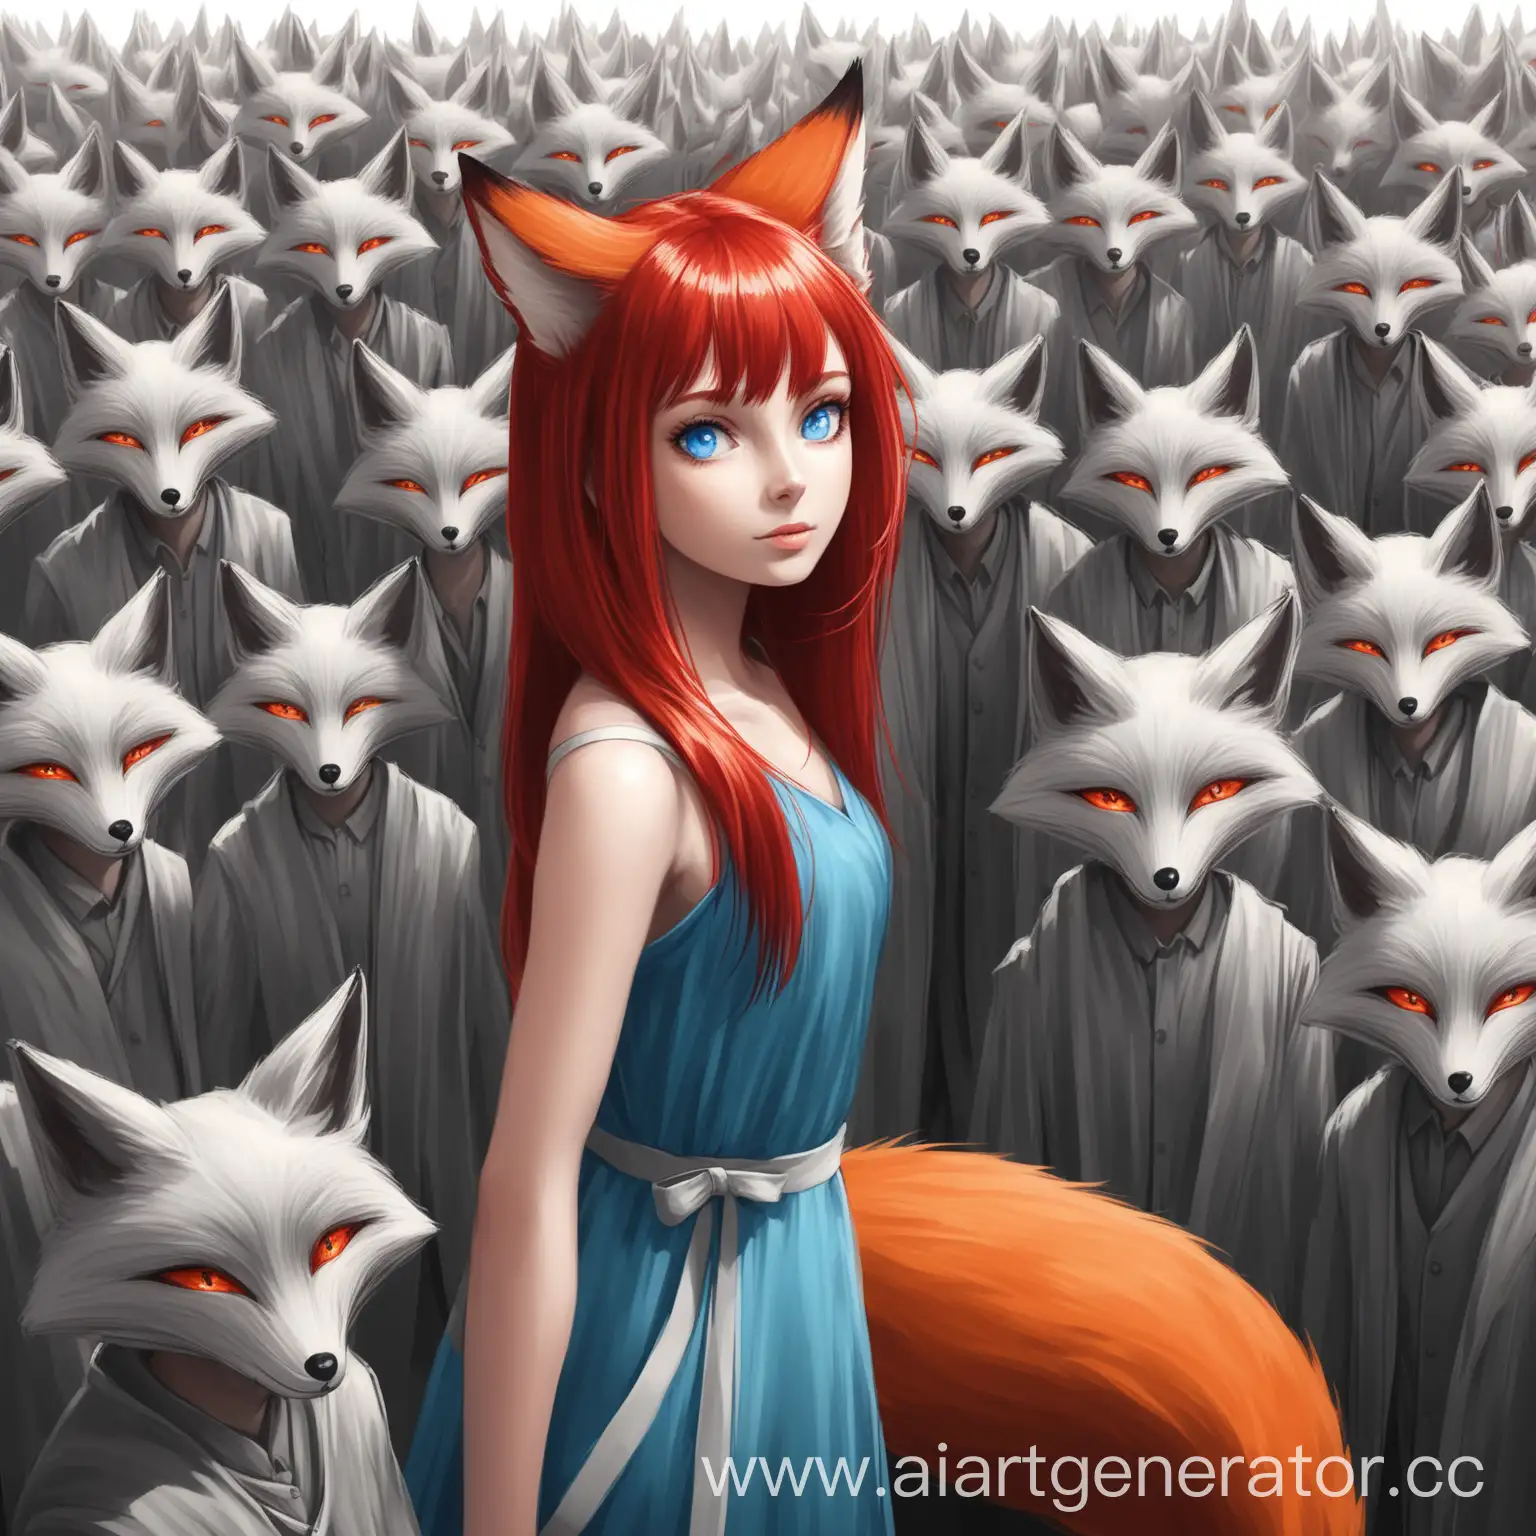 Яркая Девушка с рыжими волосами голубыми глазами, с хвостом лисы, среди серых людей